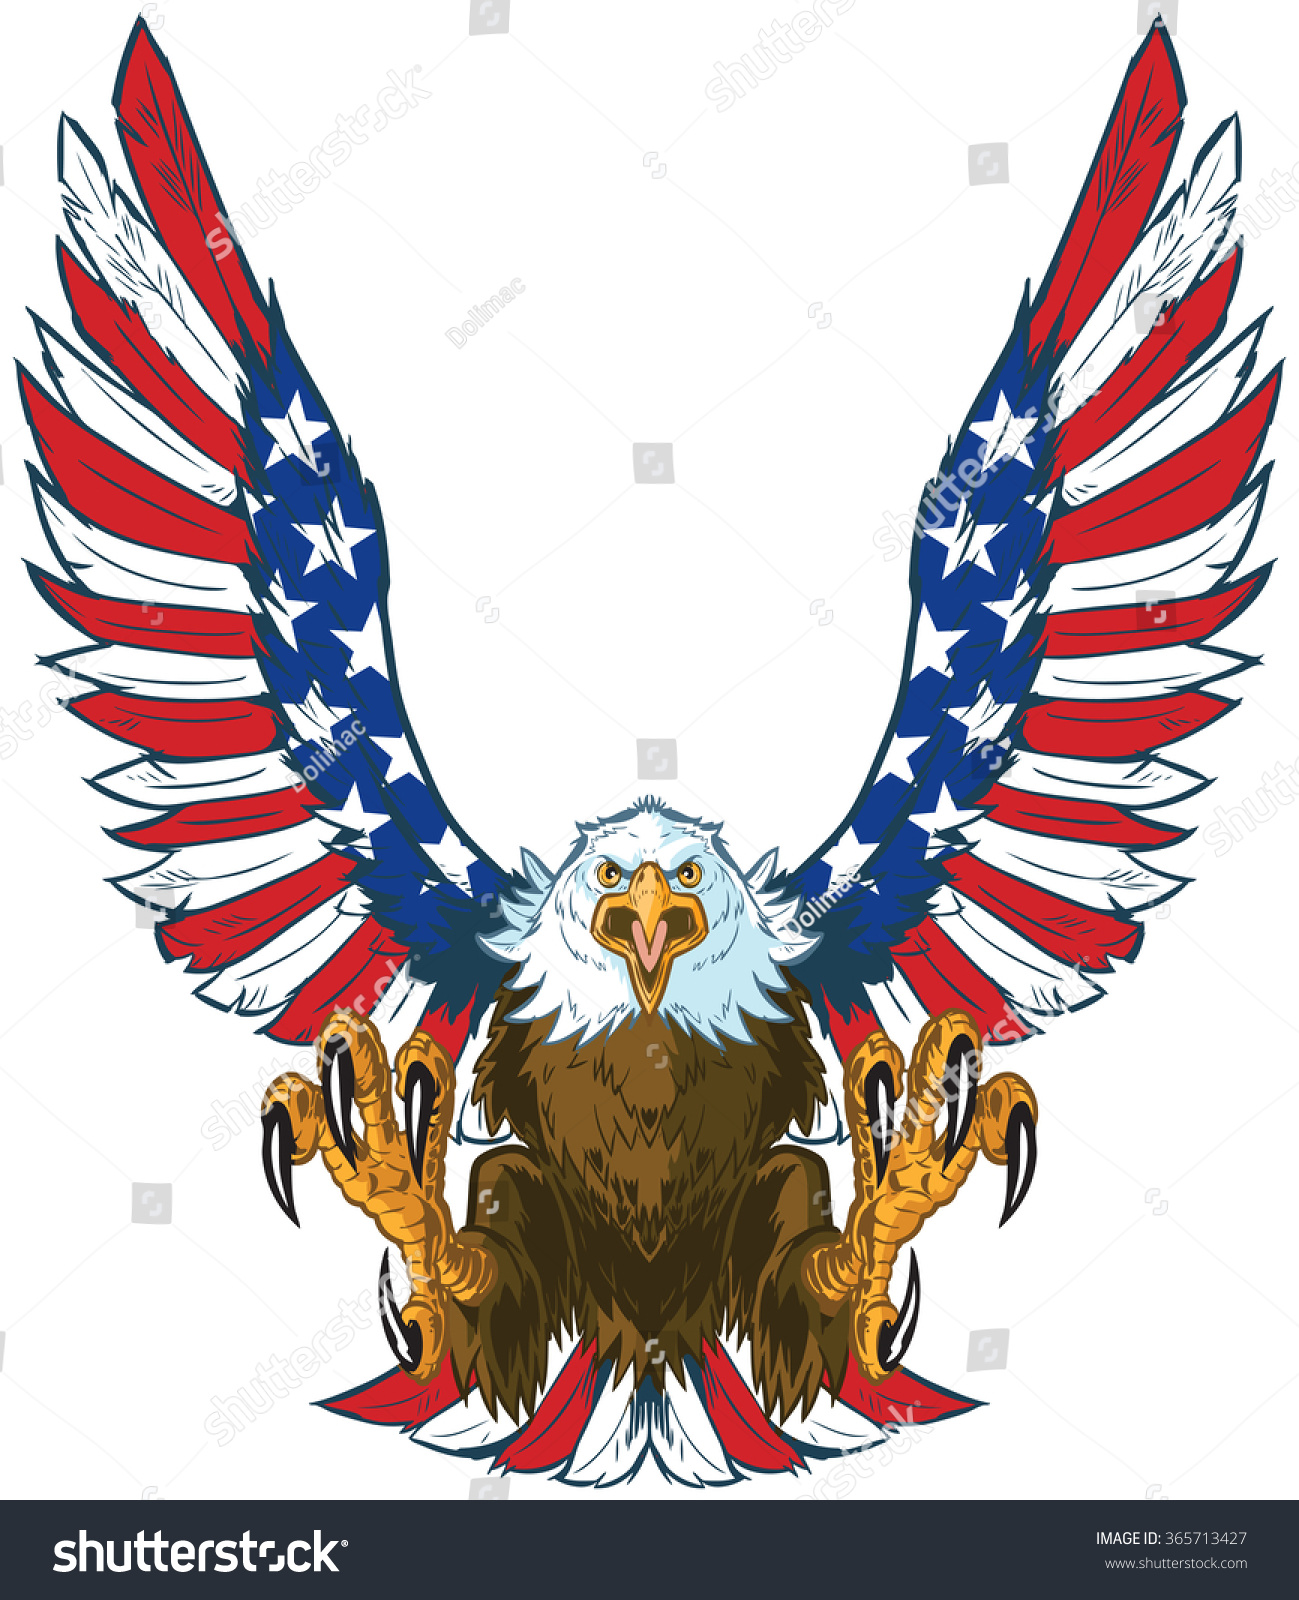 free clip art eagle and flag - photo #50